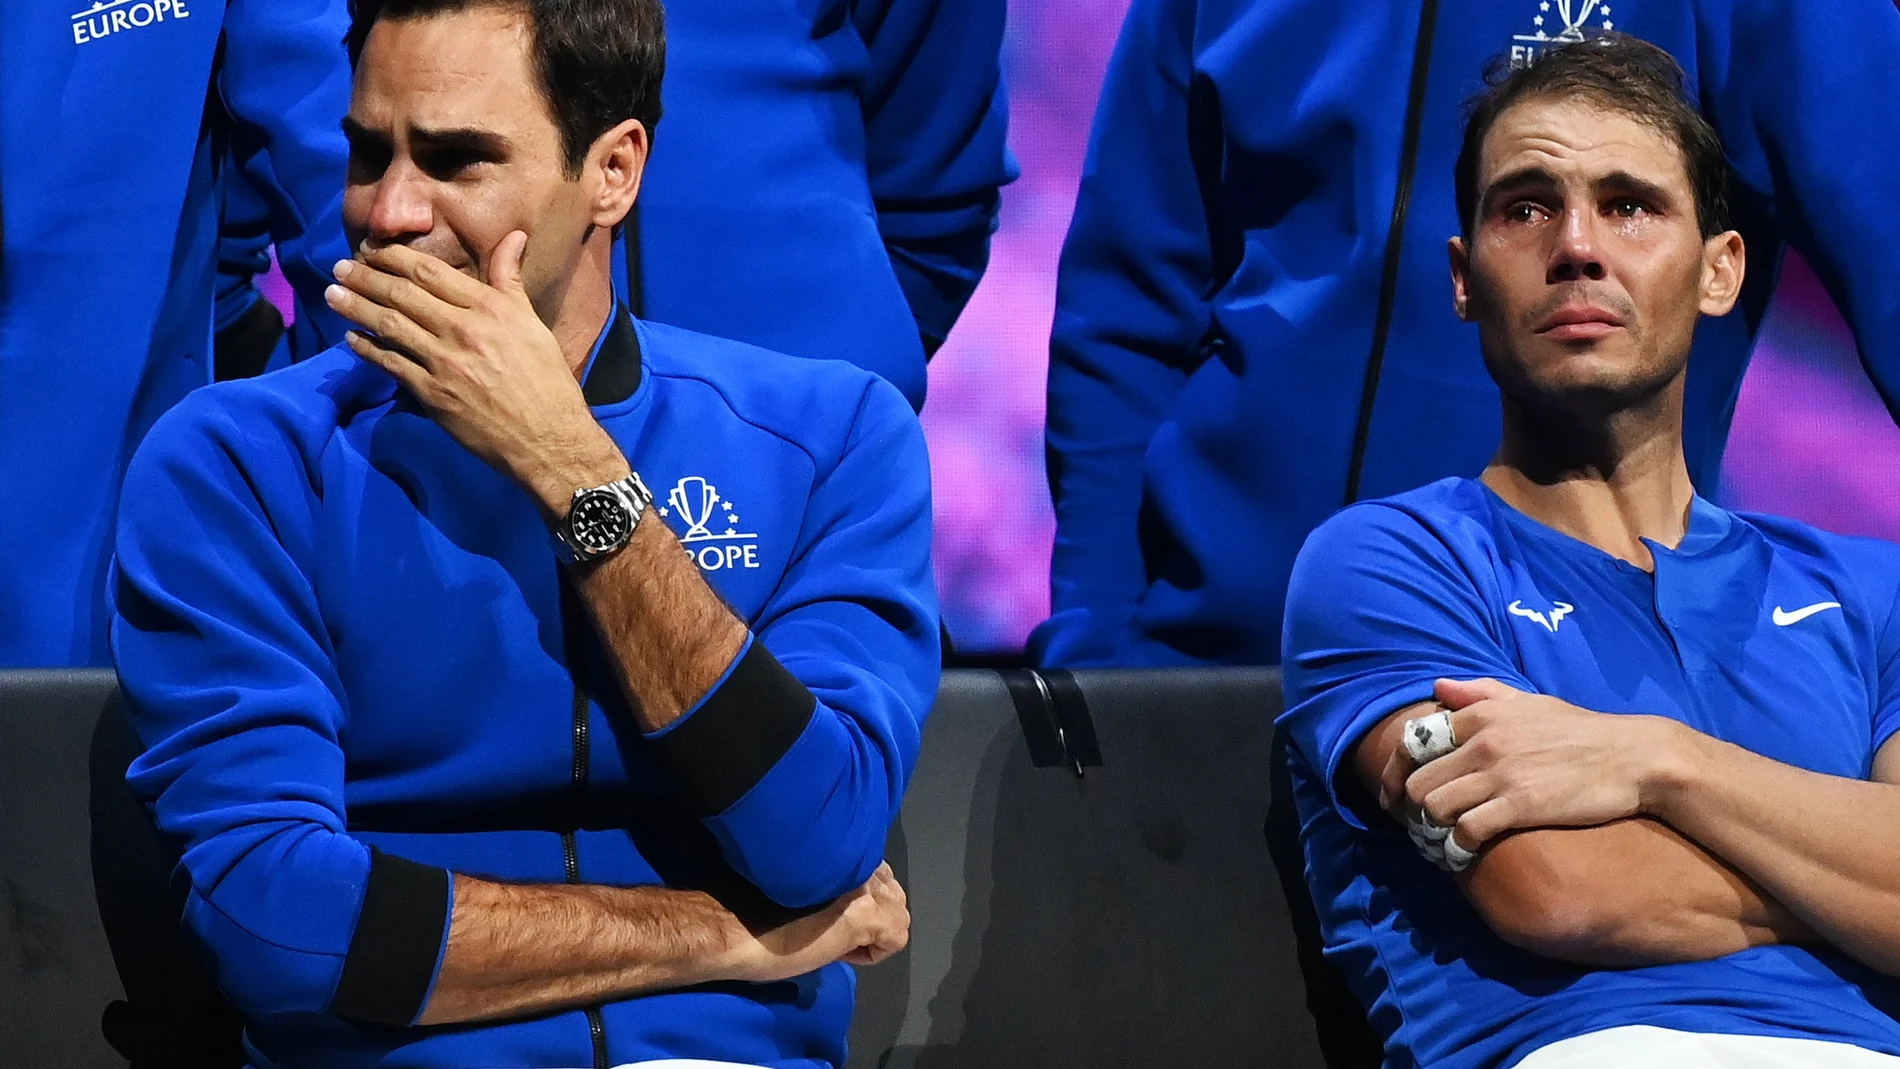 La icónica imagen de Roger Federer y Rafa Nadal que dio la vuelta al mundo